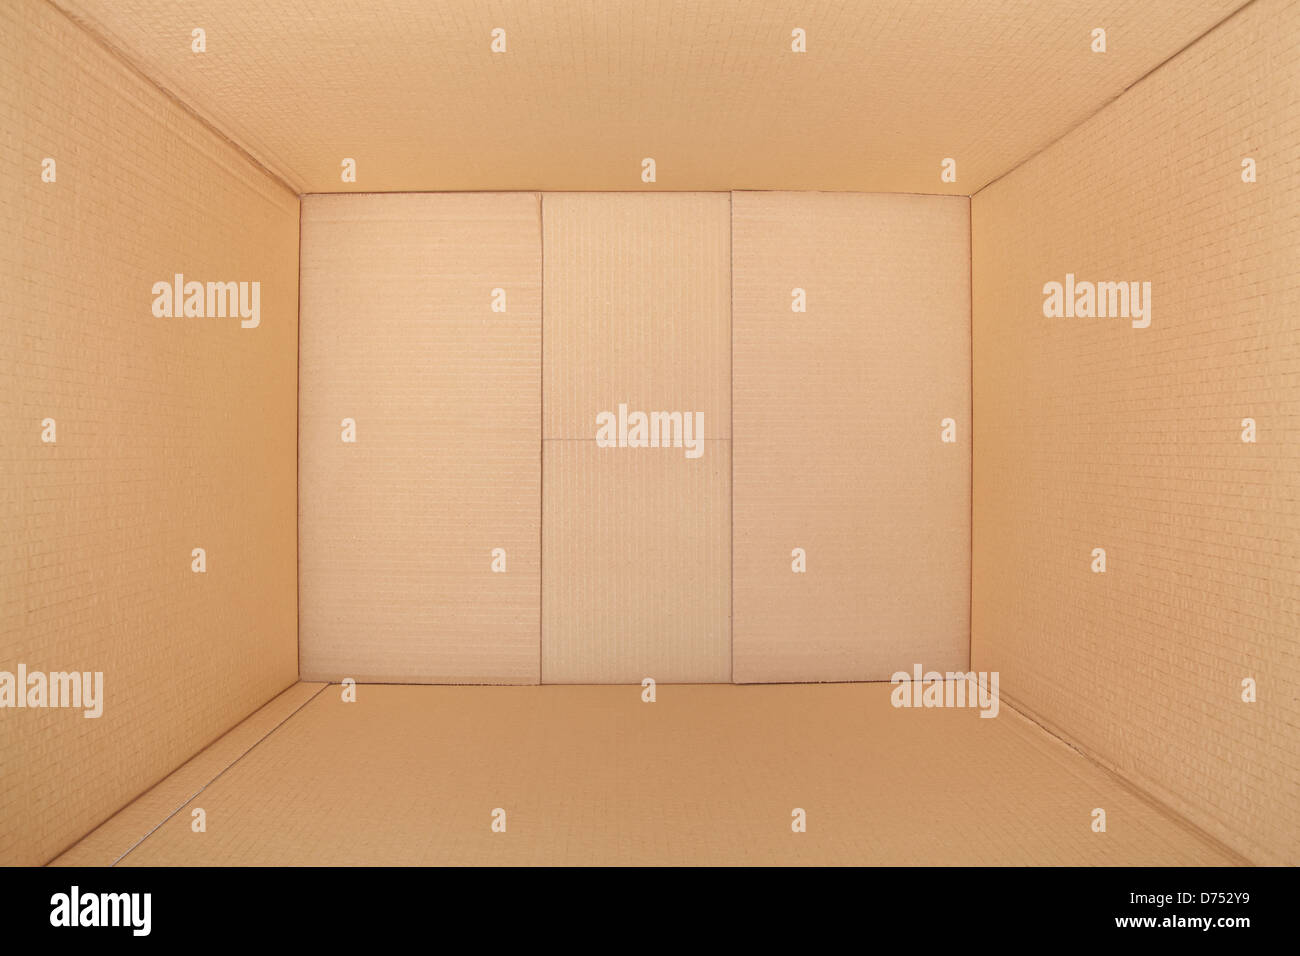 Empty cardboard box, inside view Stock Photo